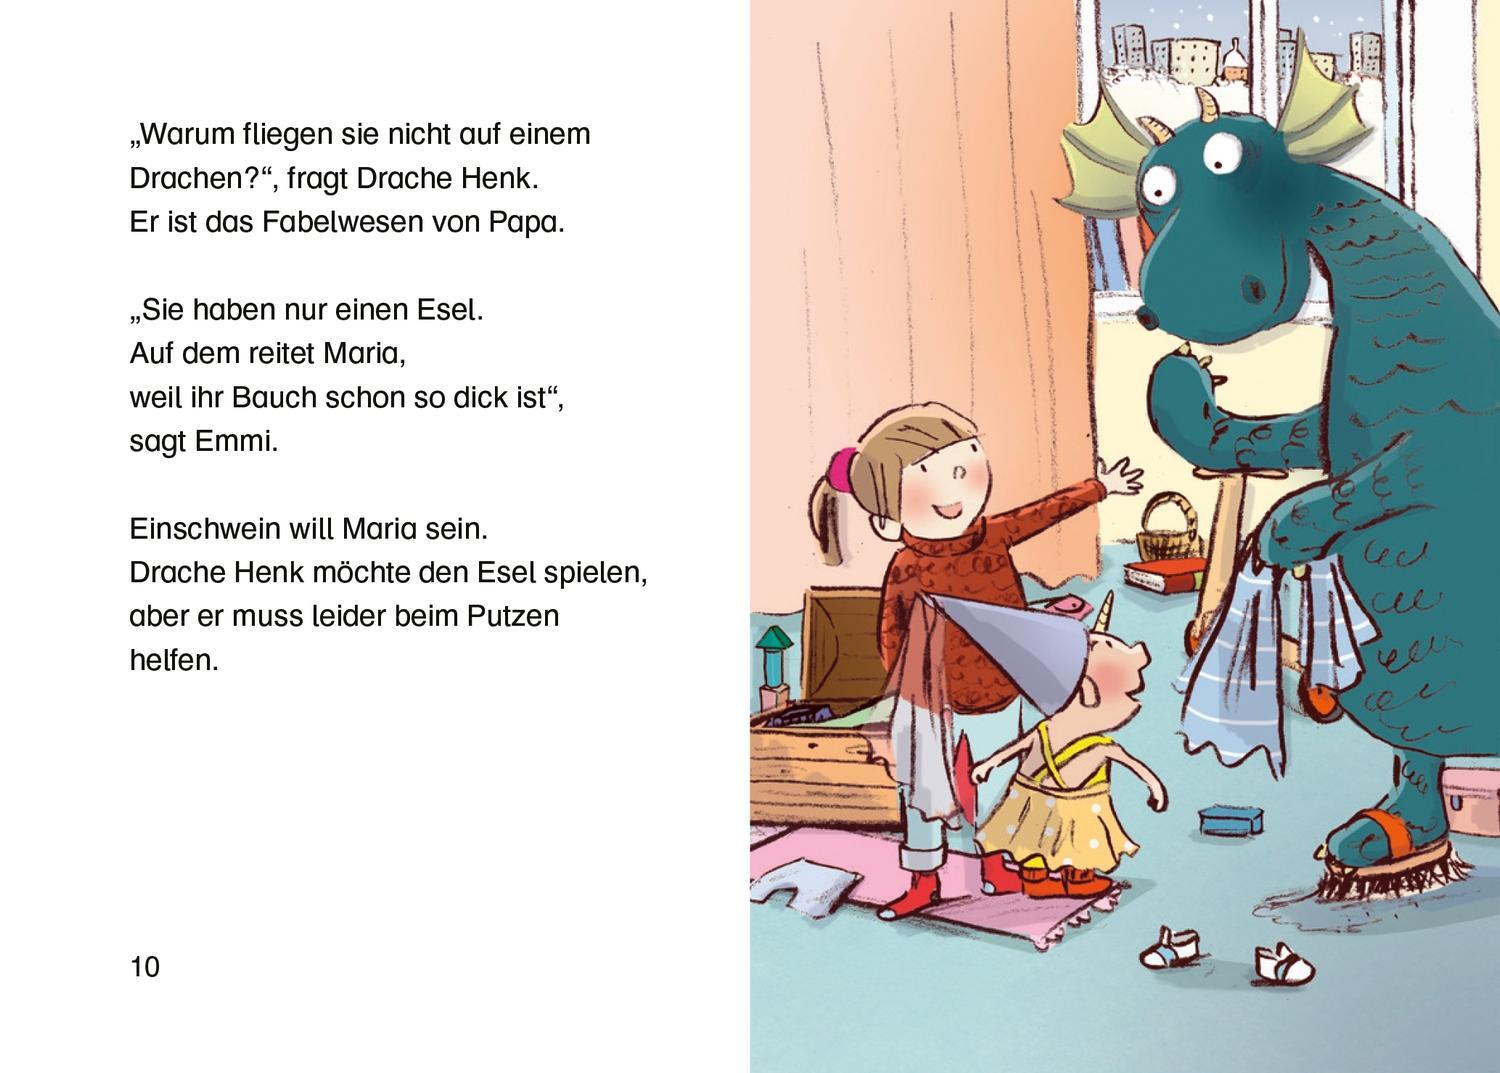 Bild: 9783751200875 | Emmi &amp; Einschwein. Fröhliche Schweinachten! | Anna Böhm | Buch | 64 S.